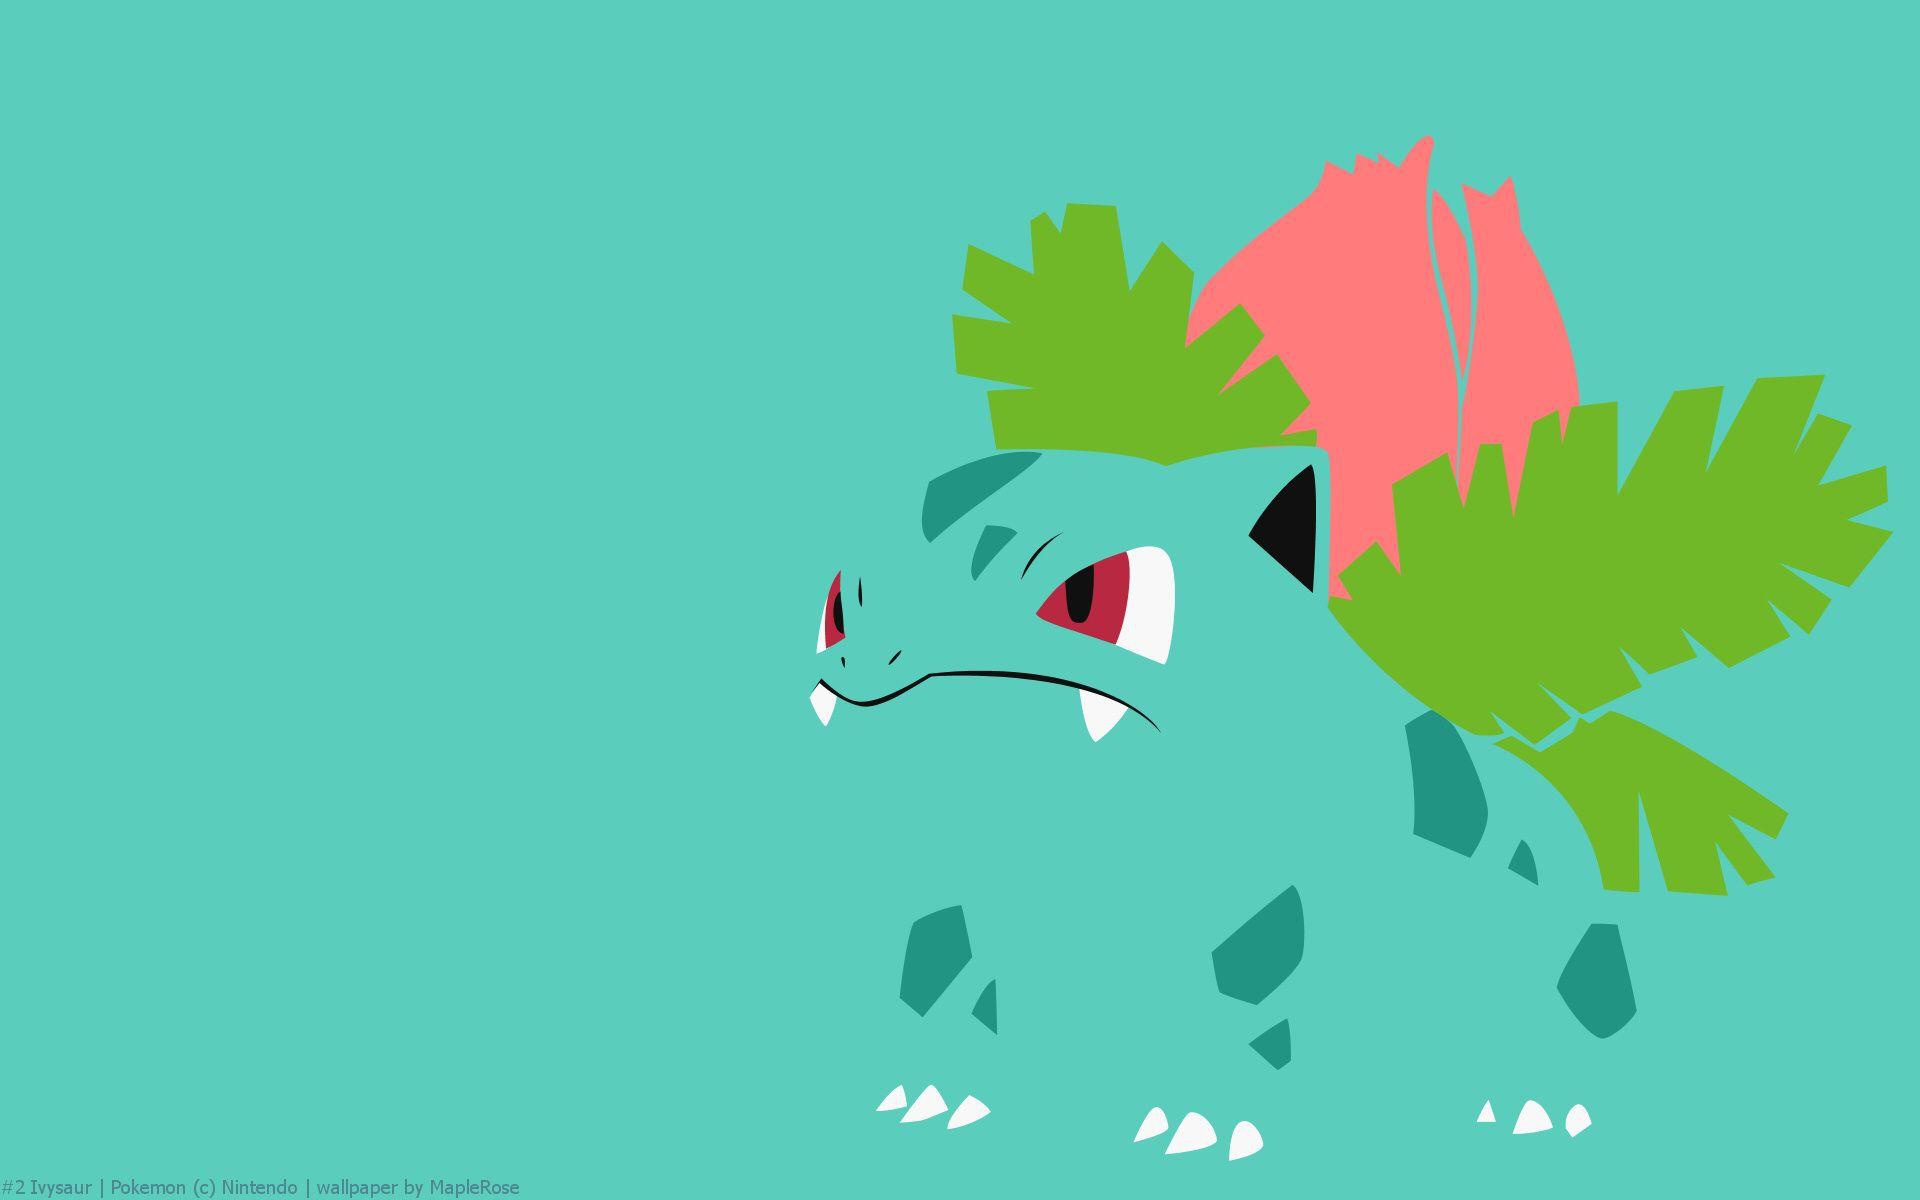 Venusaur Pokémon: How to catch, Moves, Evolution & More